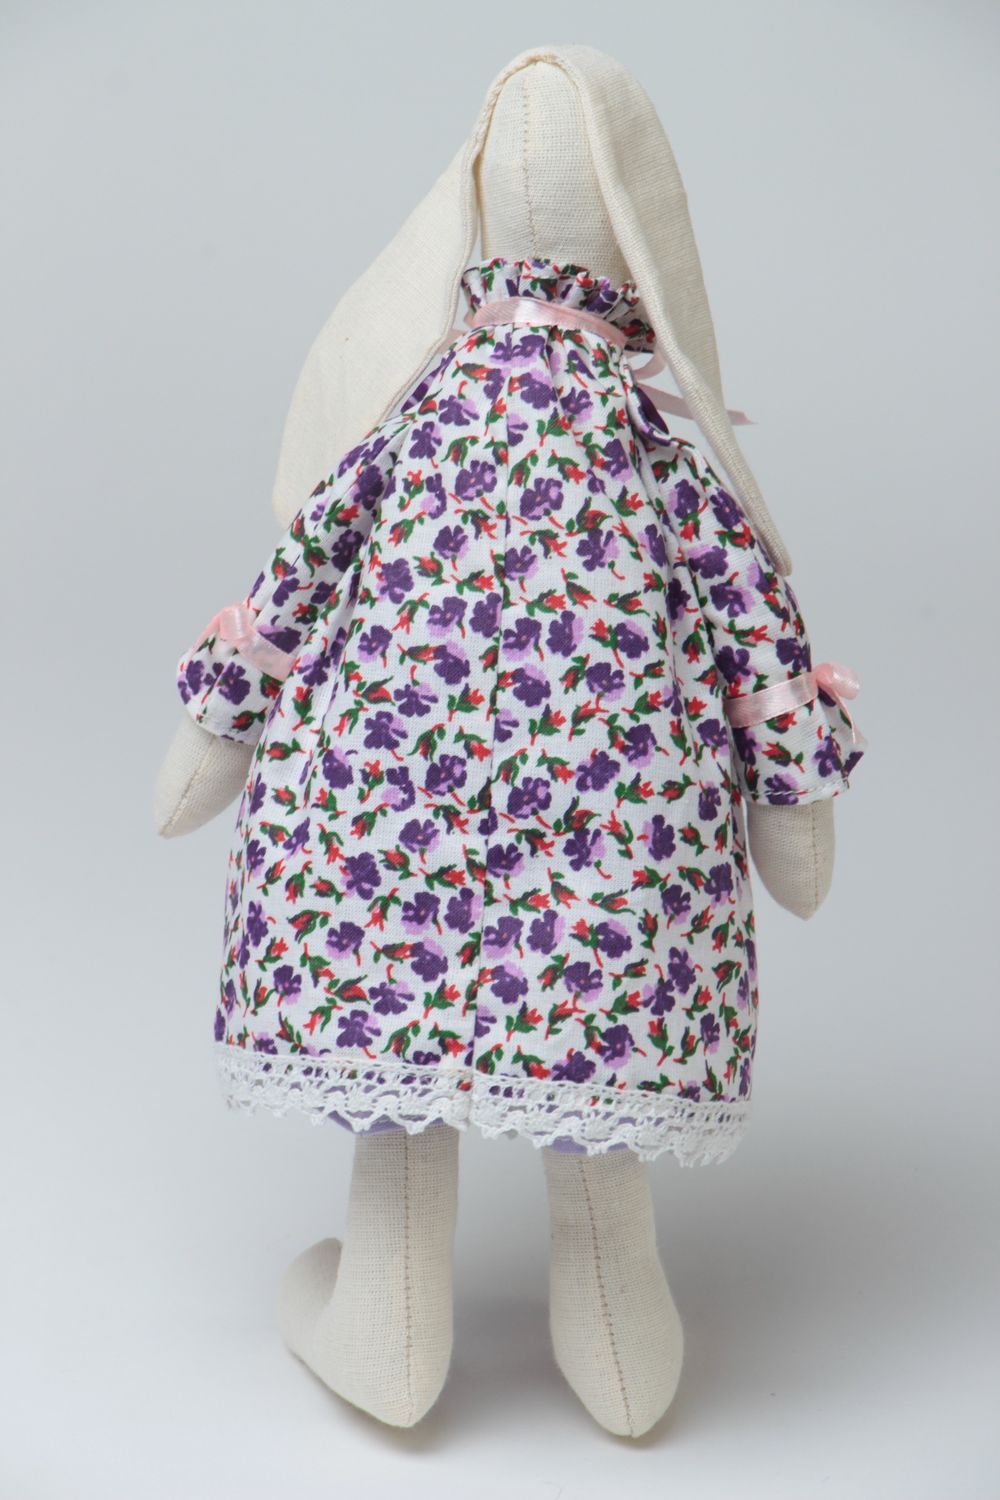 Тканевая игрушка в виде зайки в платье ручная работа небольшого размера милая фото 4